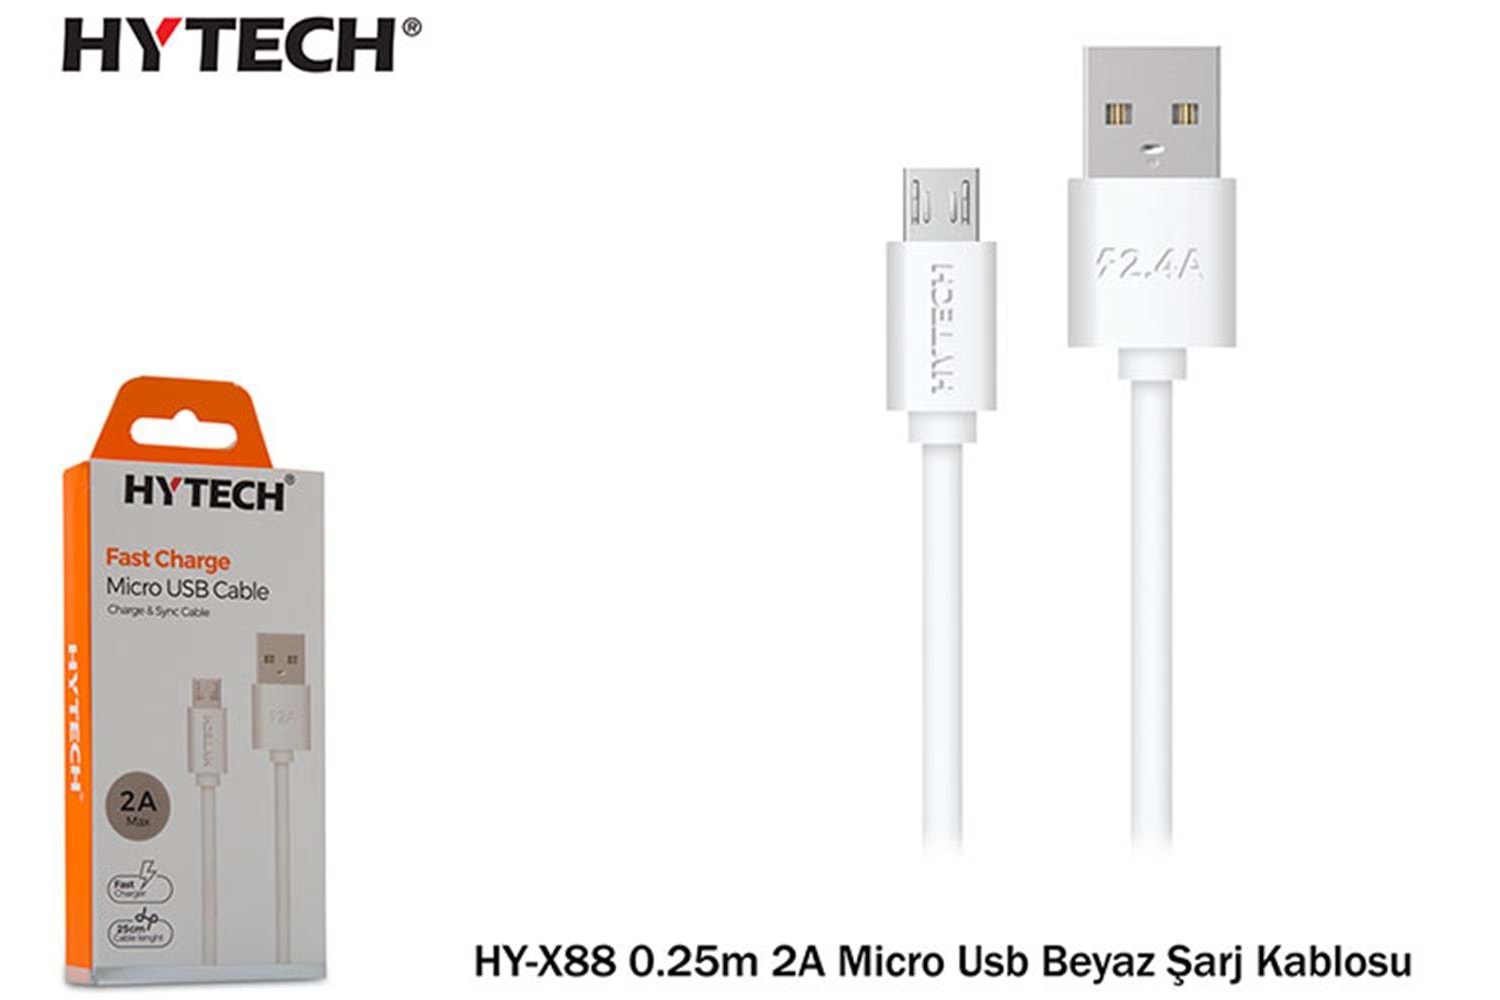 Hytech HY-X88 0.25m 2A Micro Usb Beyaz Şarj Kablos